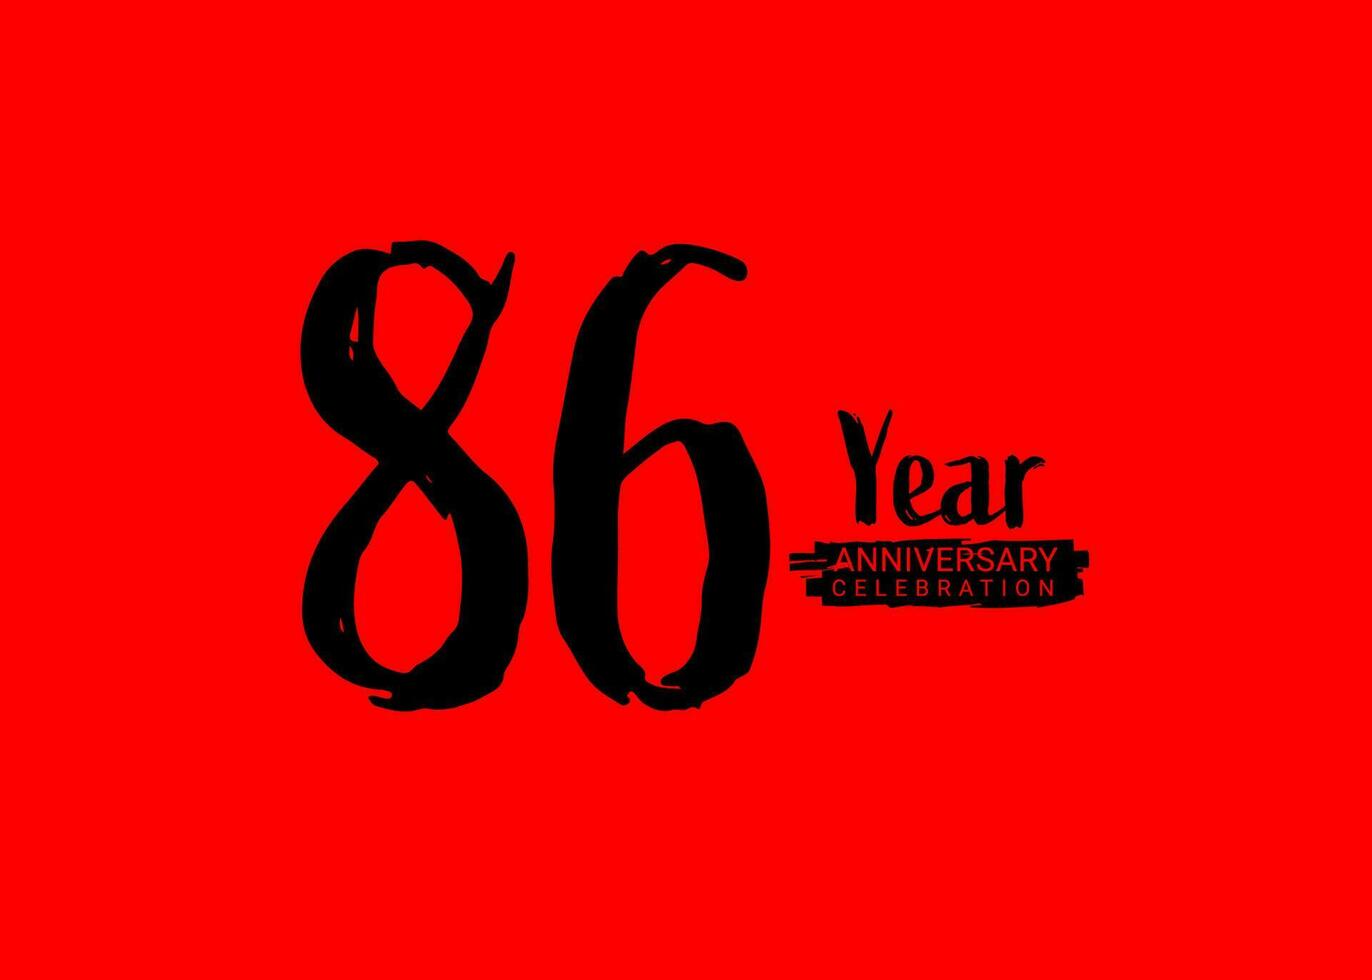 86 Jahre Jahrestag Feier Logo auf rot Hintergrund, 86 Nummer Logo Entwurf, 86 Geburtstag Logo, Logo Jubiläum, Vektor Jahrestag zum Feier, Poster, Einladung Karte